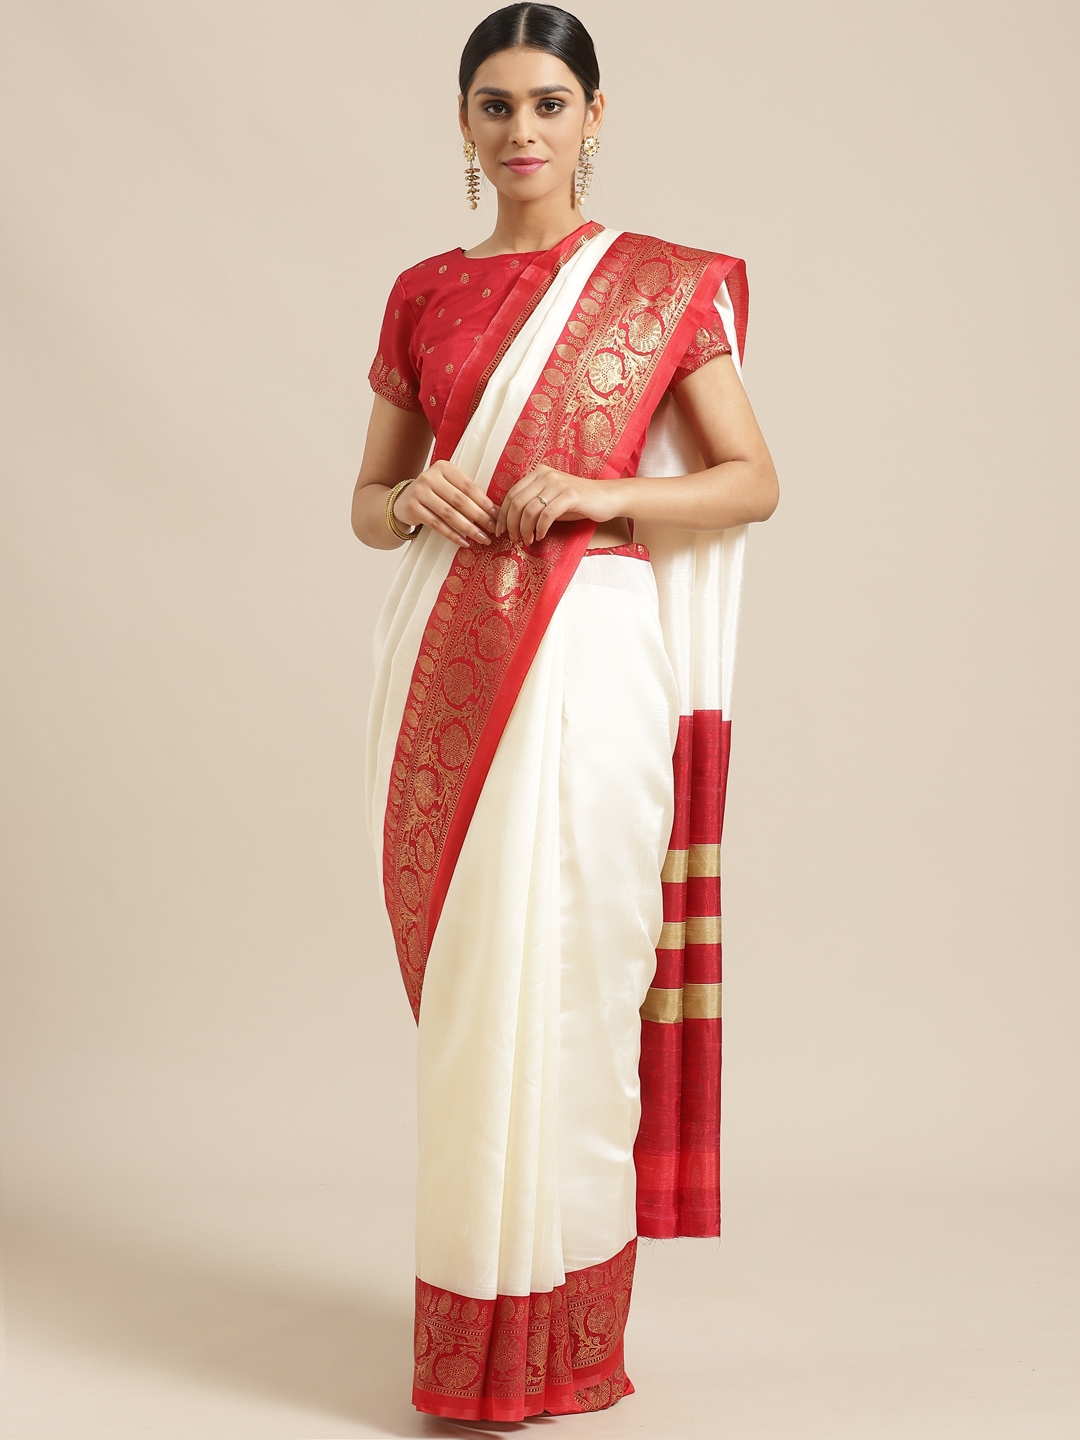 Off-white kanchipuram silk saree at kanjivaramsilks.com | Fashion show  dresses, Stylish sarees, Fashion